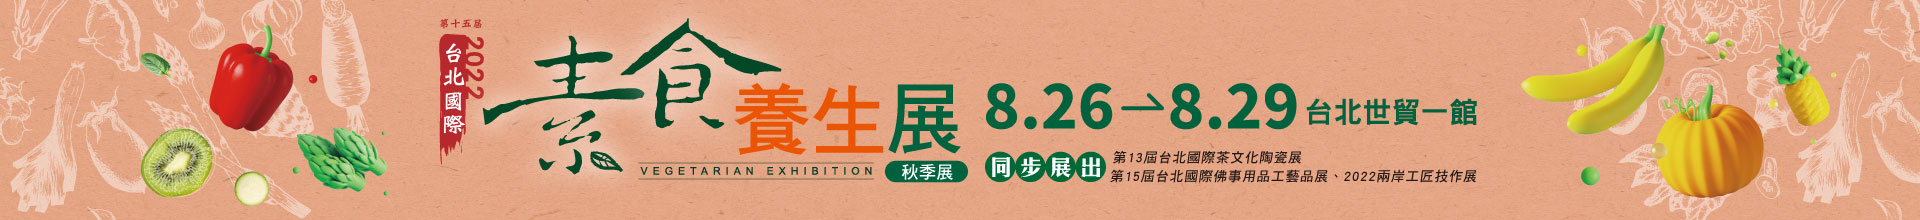 第15屆台北國際素食養生展(秋季展)